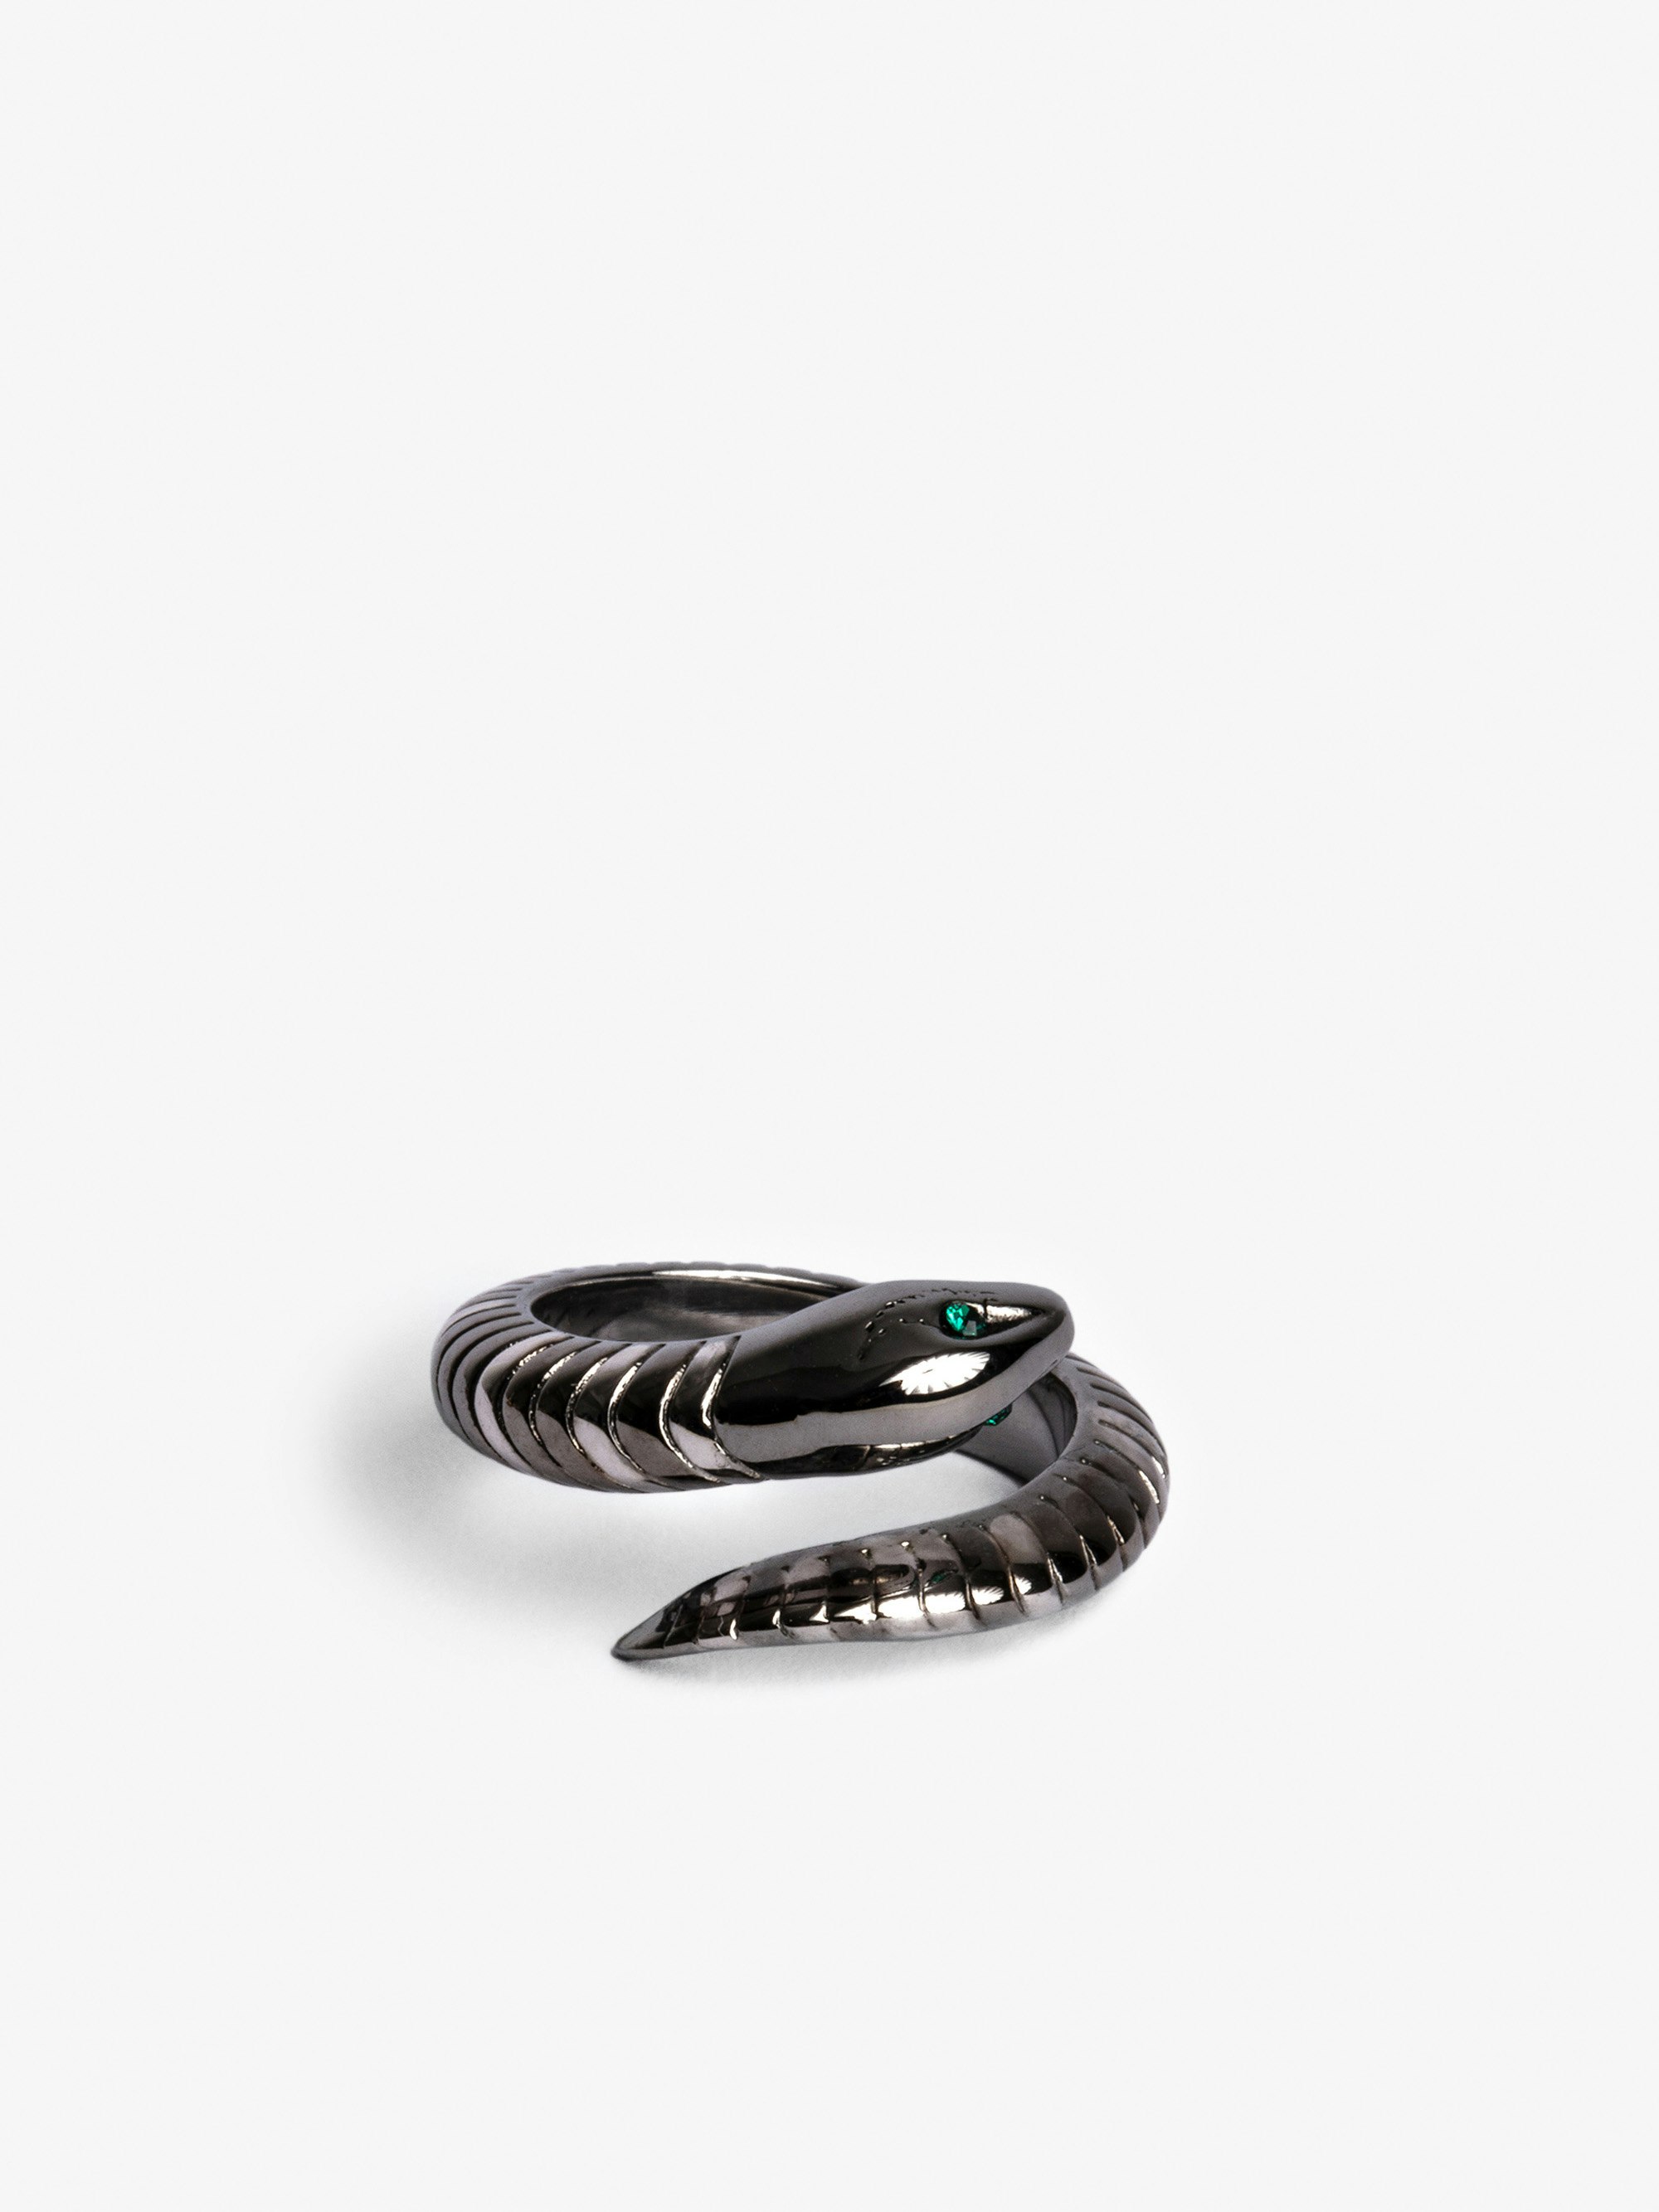 Bague Snake - Bague serpent en laiton argent.